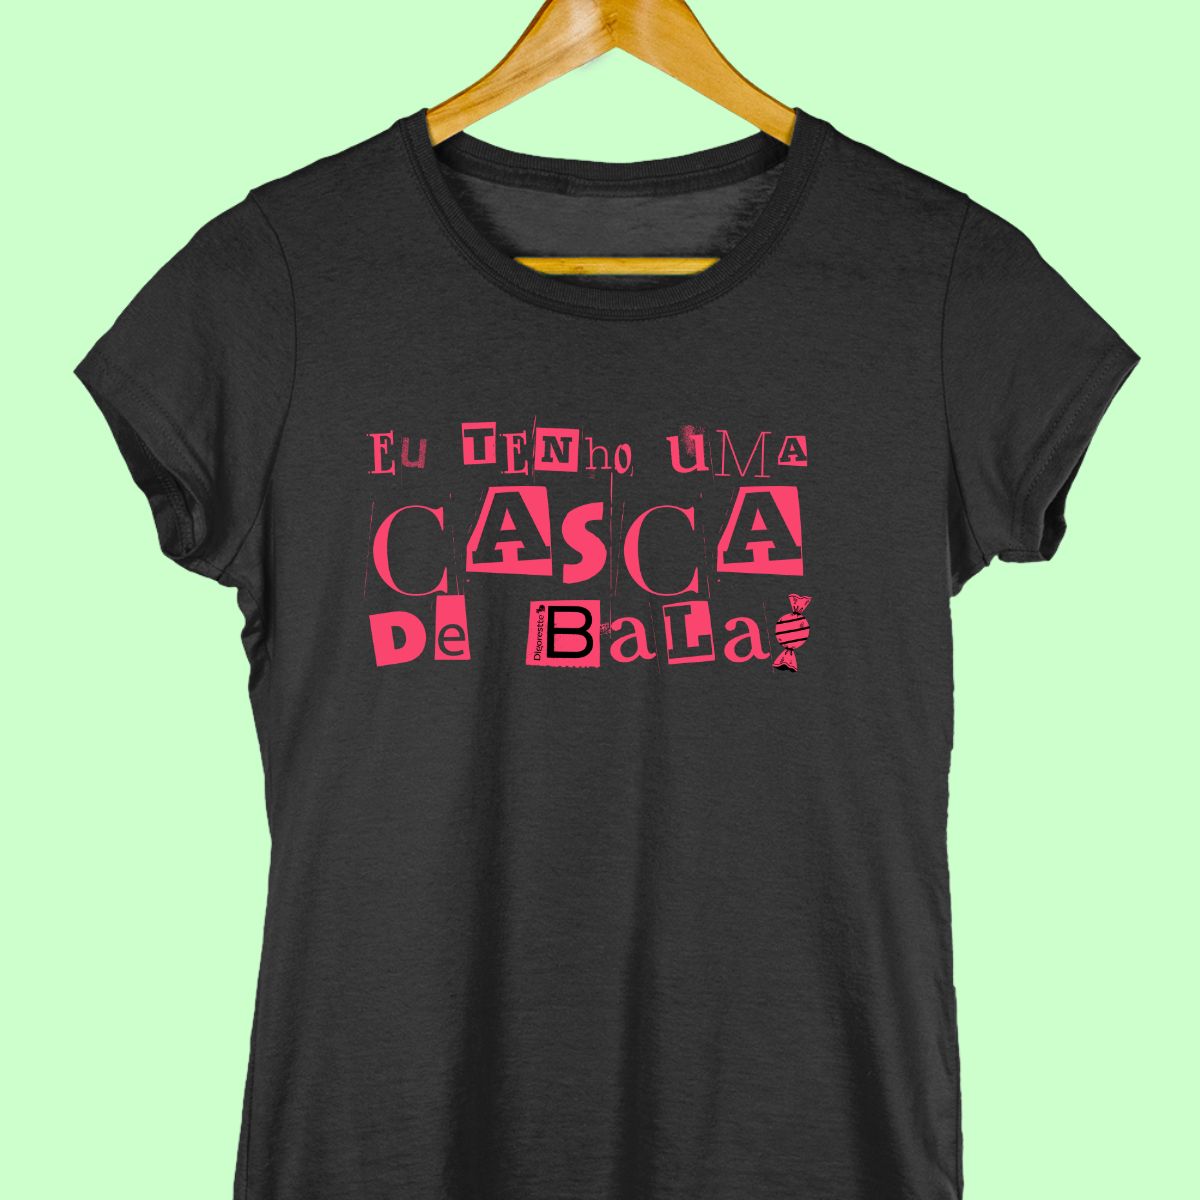 Camiseta com a frase "Eu tenho uma casca de bala" feminina preta.